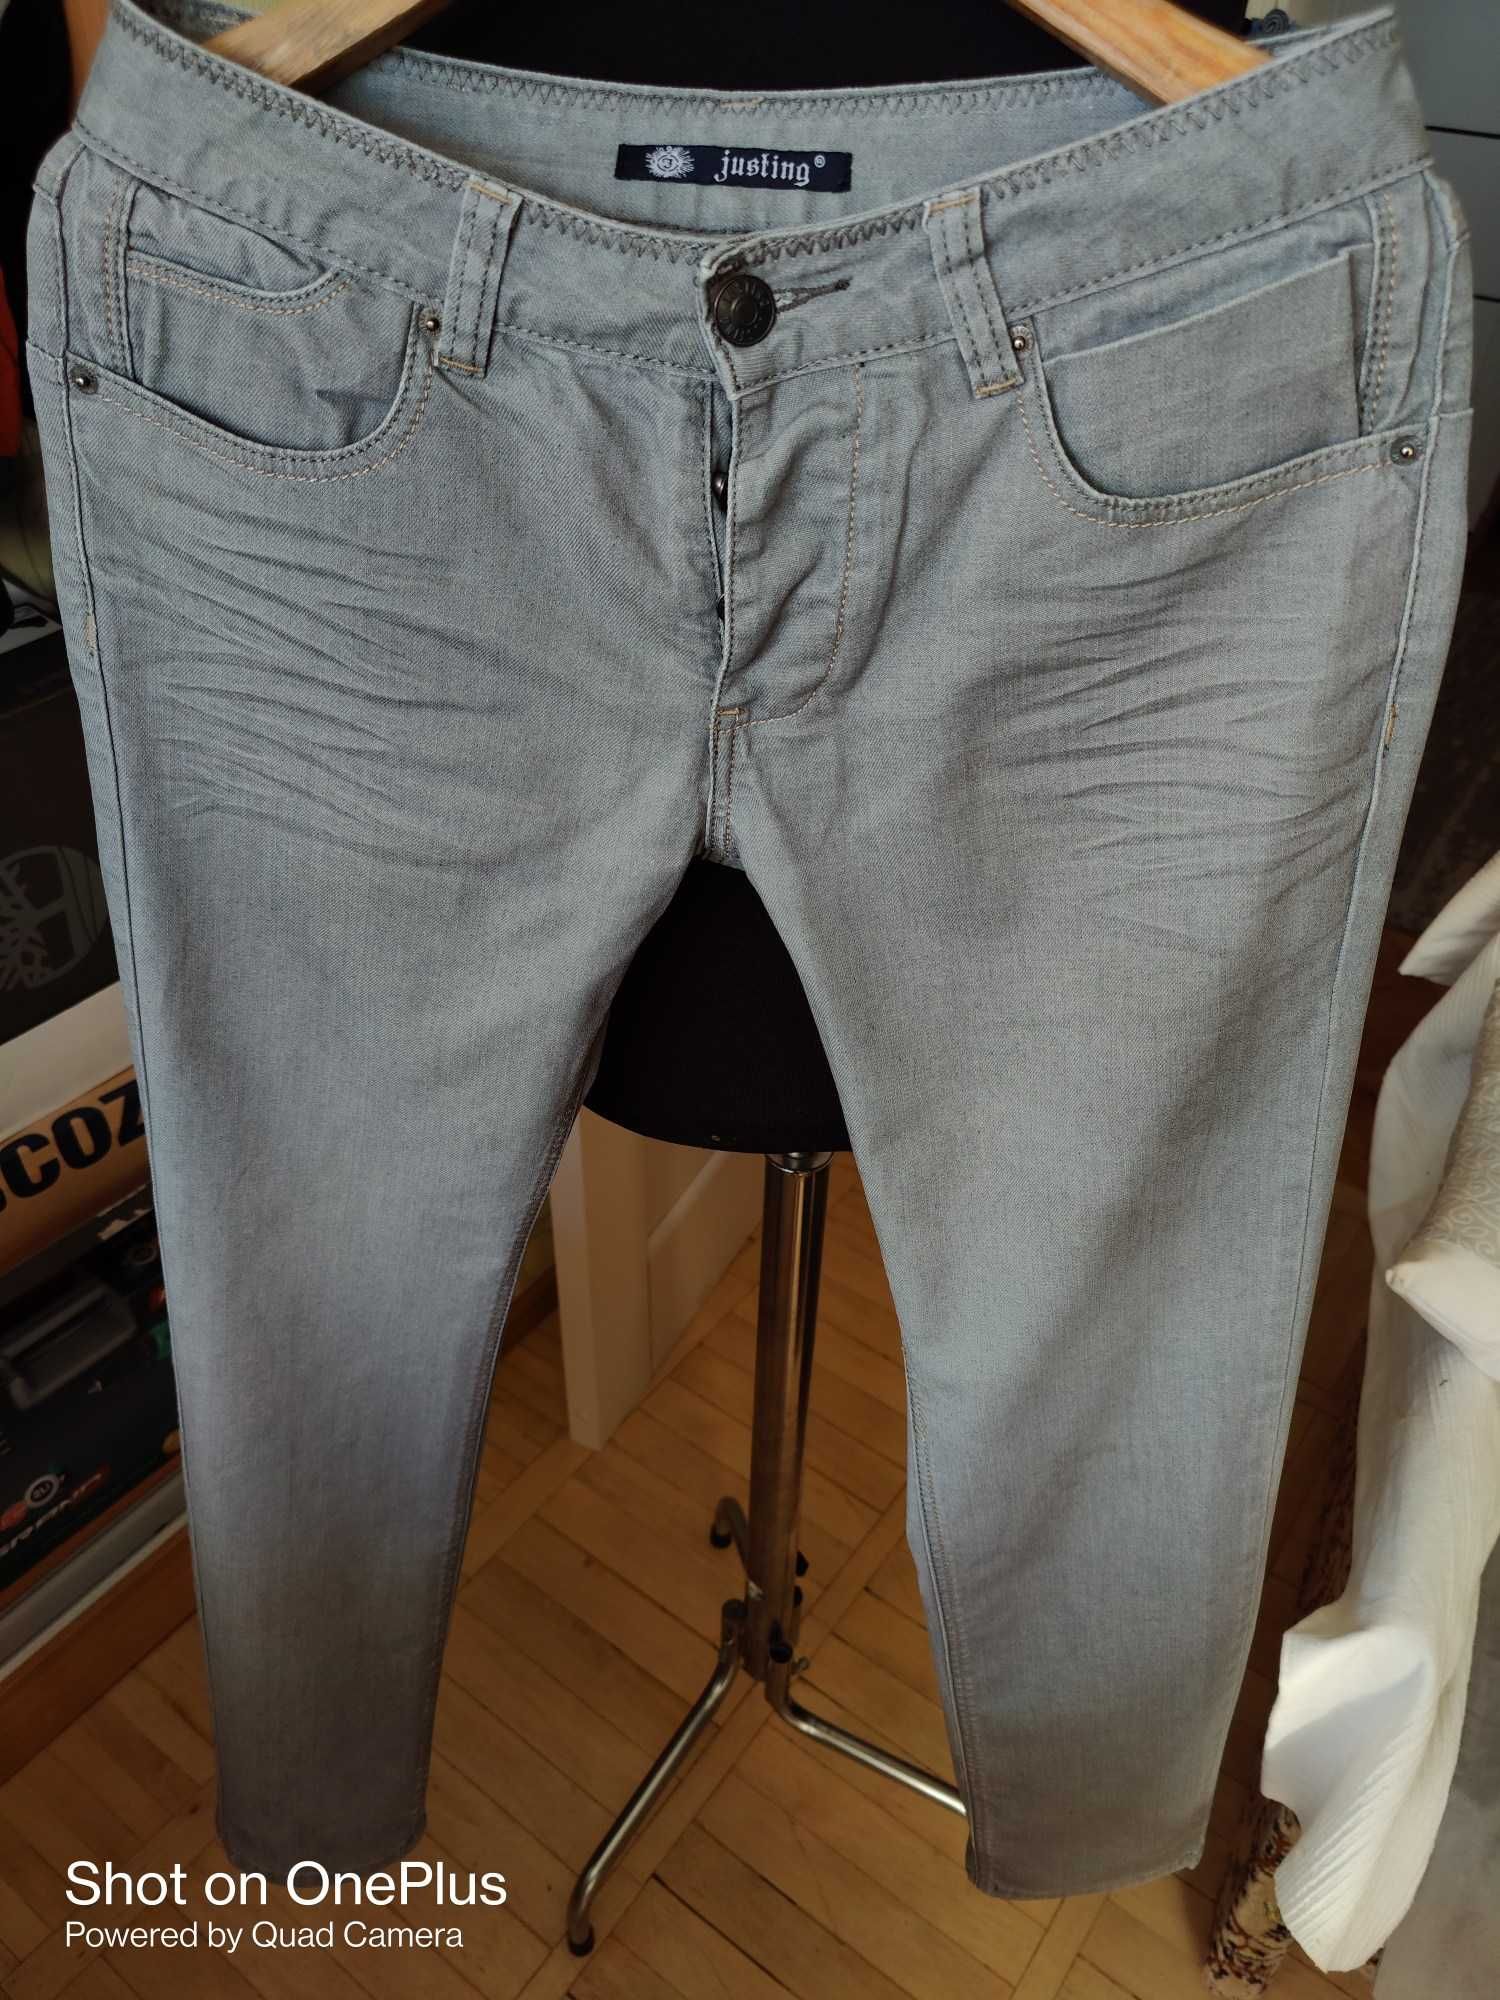 Джинсы Justing jeans Germany w31 stretch.